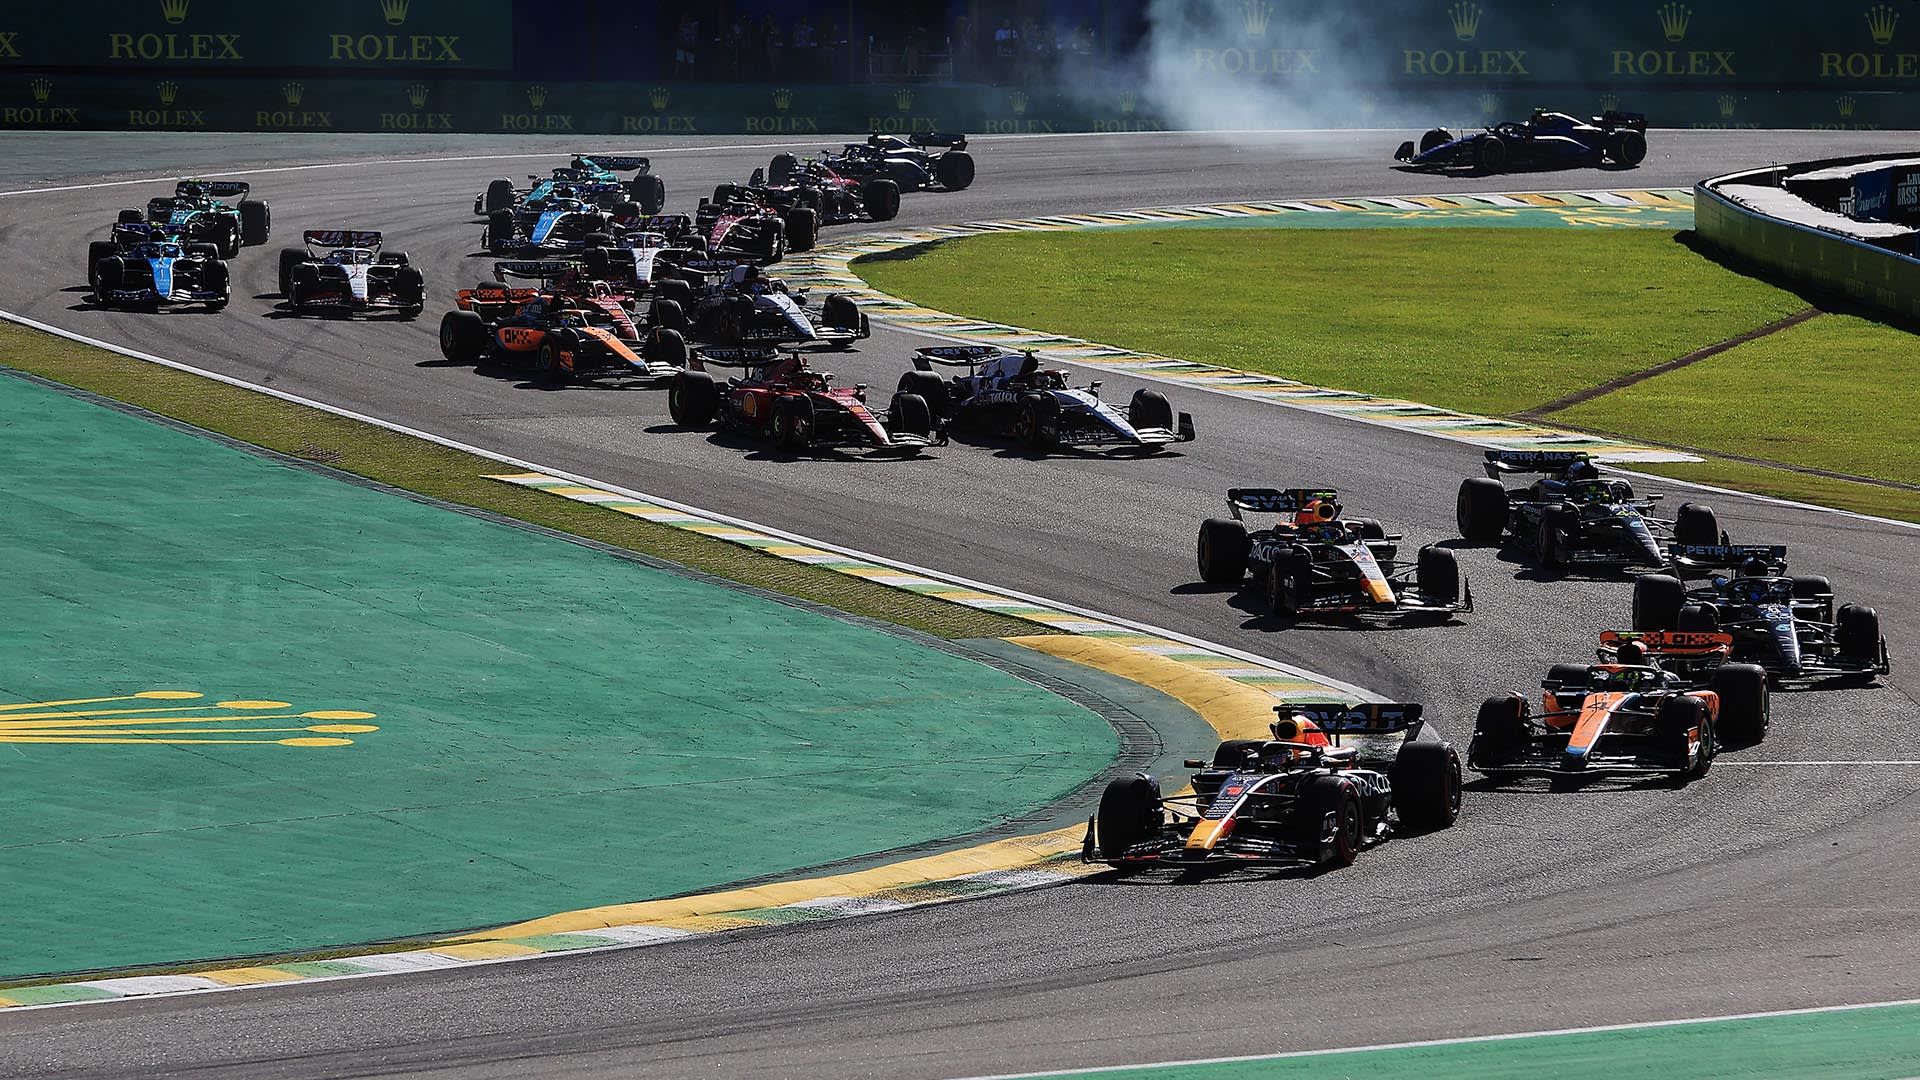 Sao Paulo Grand Prix 2021, Brazil